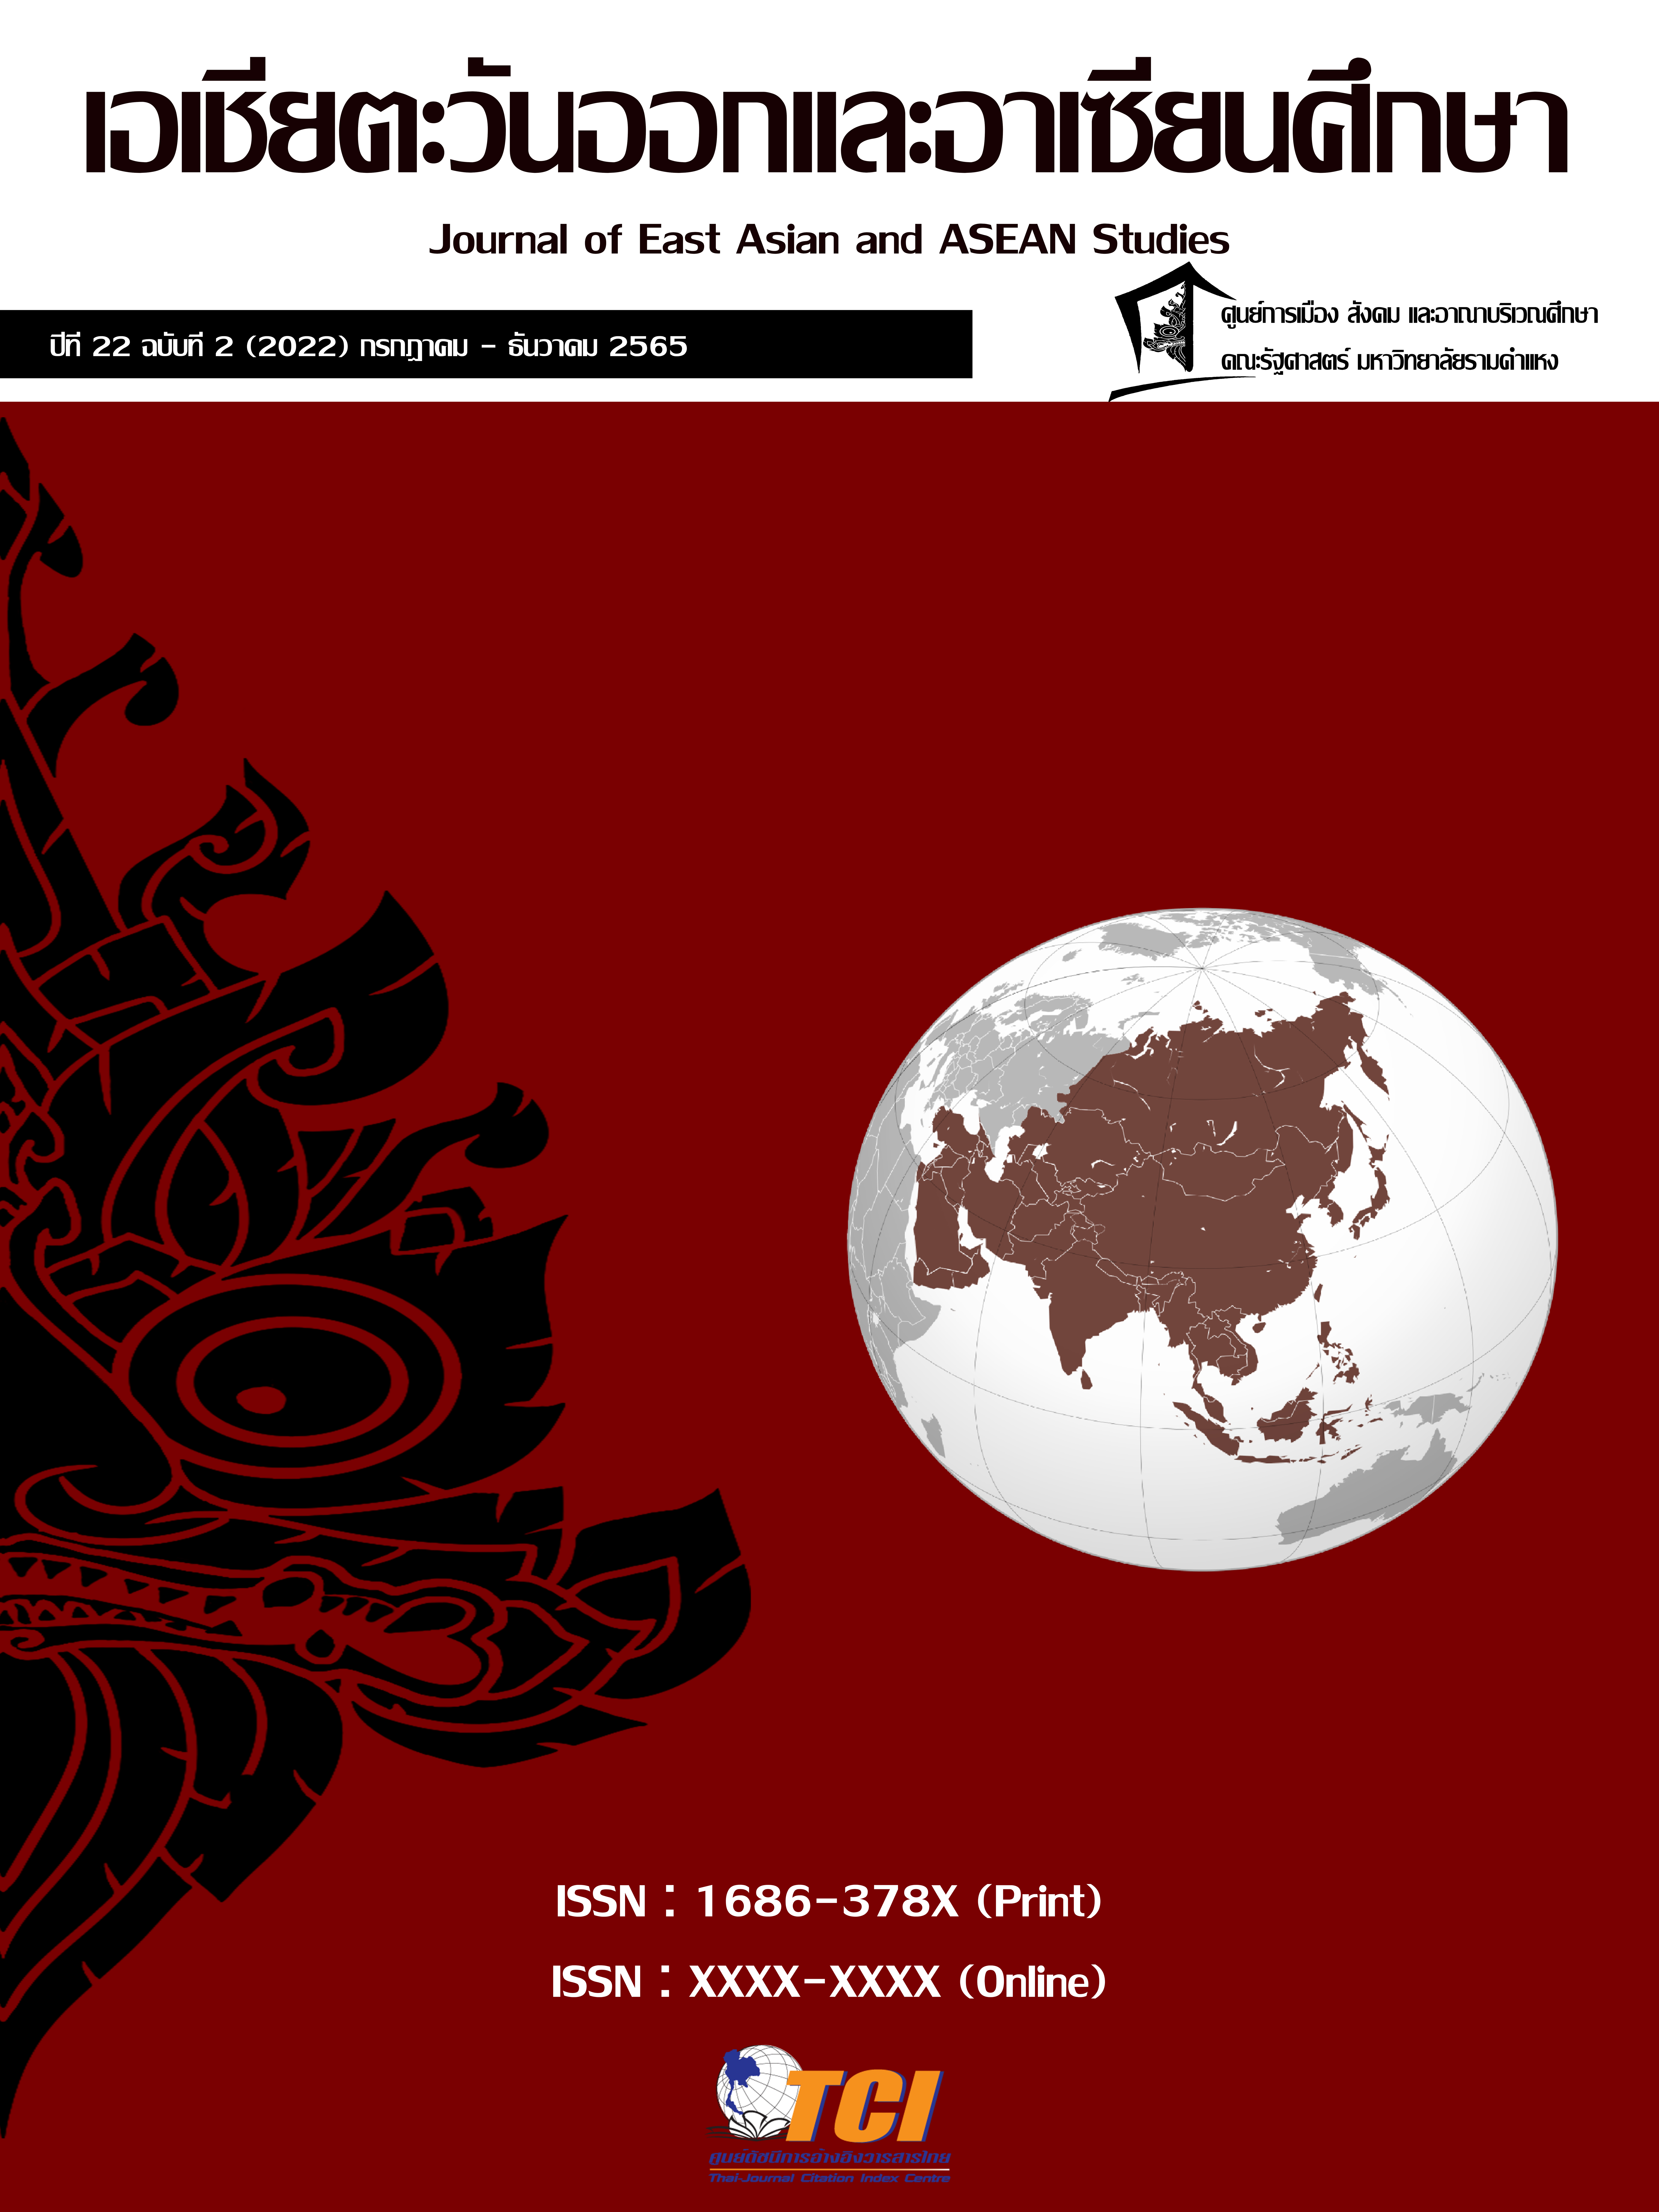 					ดู ปีที่ 22 ฉบับที่ 2 (2022): วารสารเอเชียตะวันออกและอาเซียนศึกษา
				